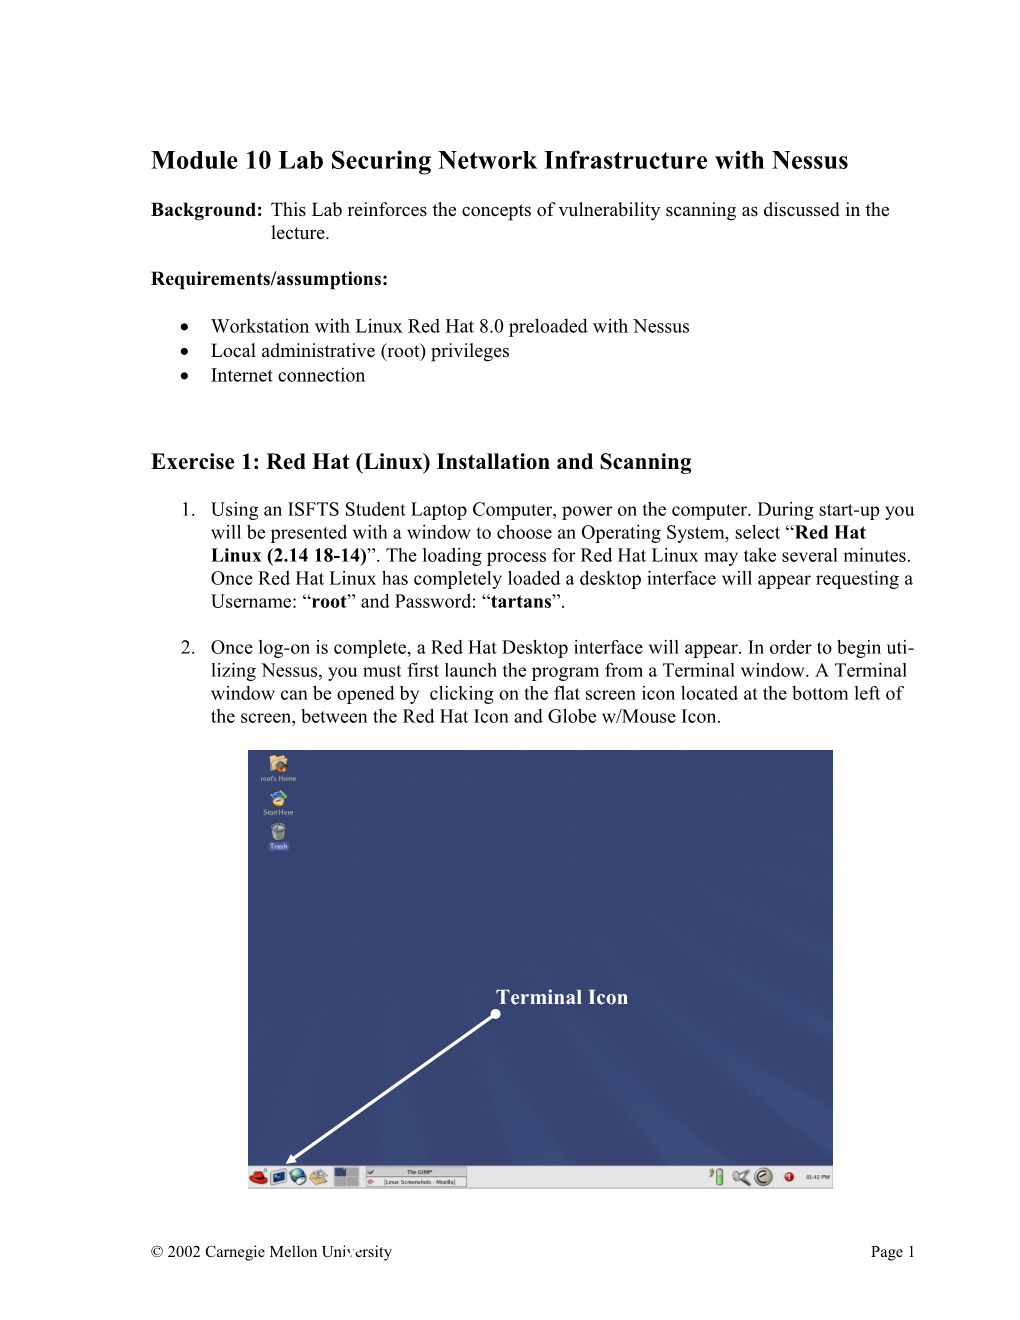 Module 10 Securing LAN Infrastructure Lab